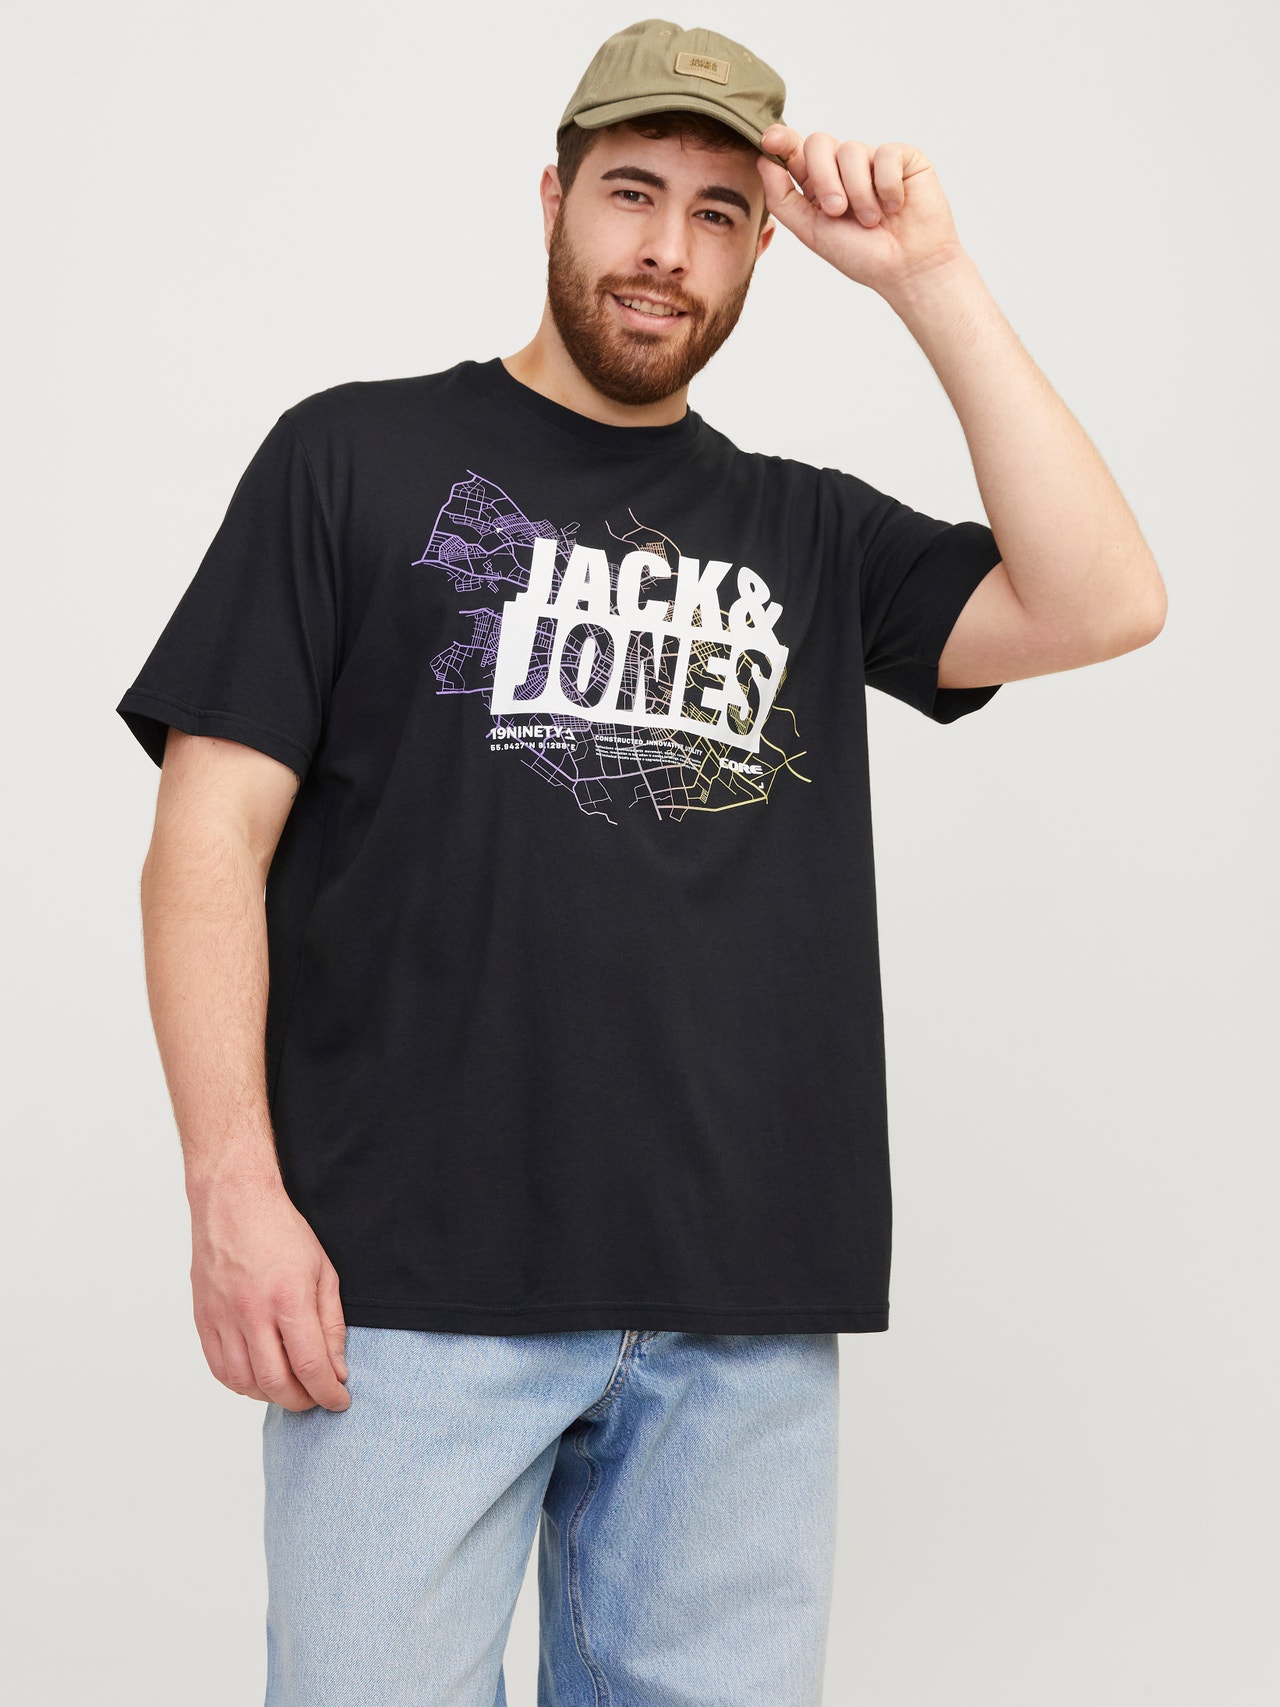 Jack & Jones Plus Size T-shirt Imprimé -Black - 12257364